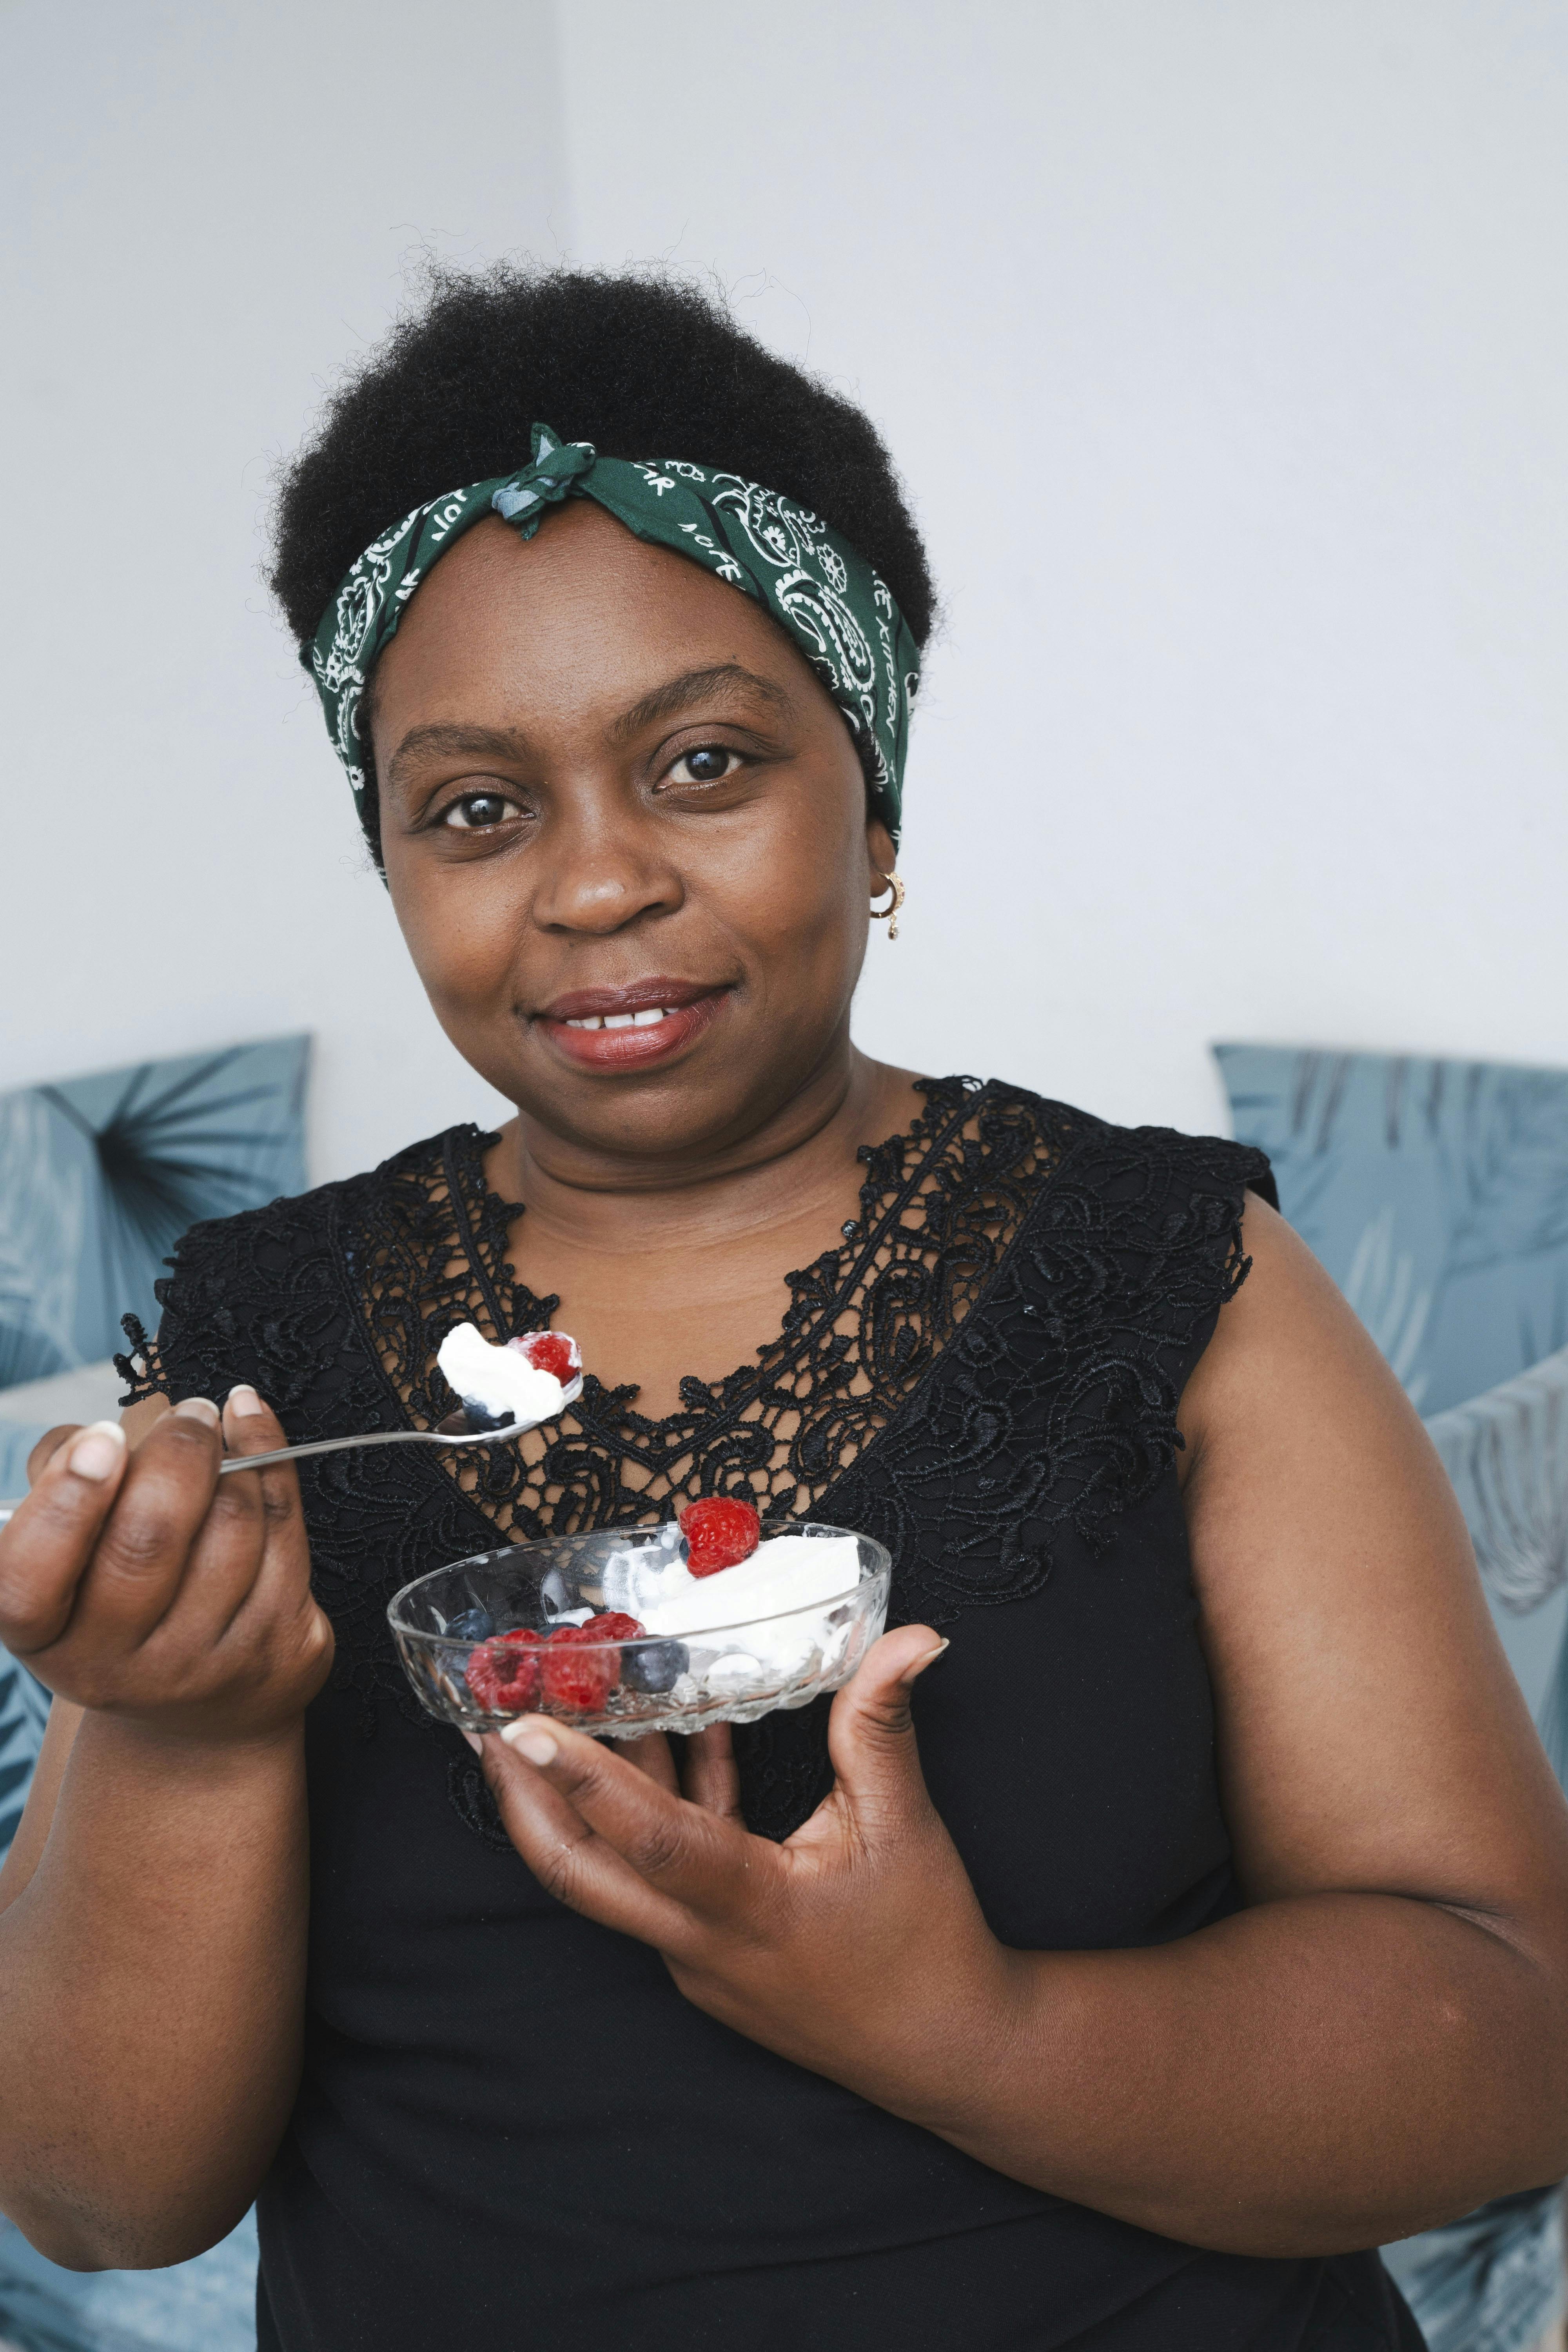 40-årige Mary Christiansen fra Frederiksberg har testet Ude og Hjemmes populære is-kur, hvor almindelig mad må vige for lækre is-deserter.